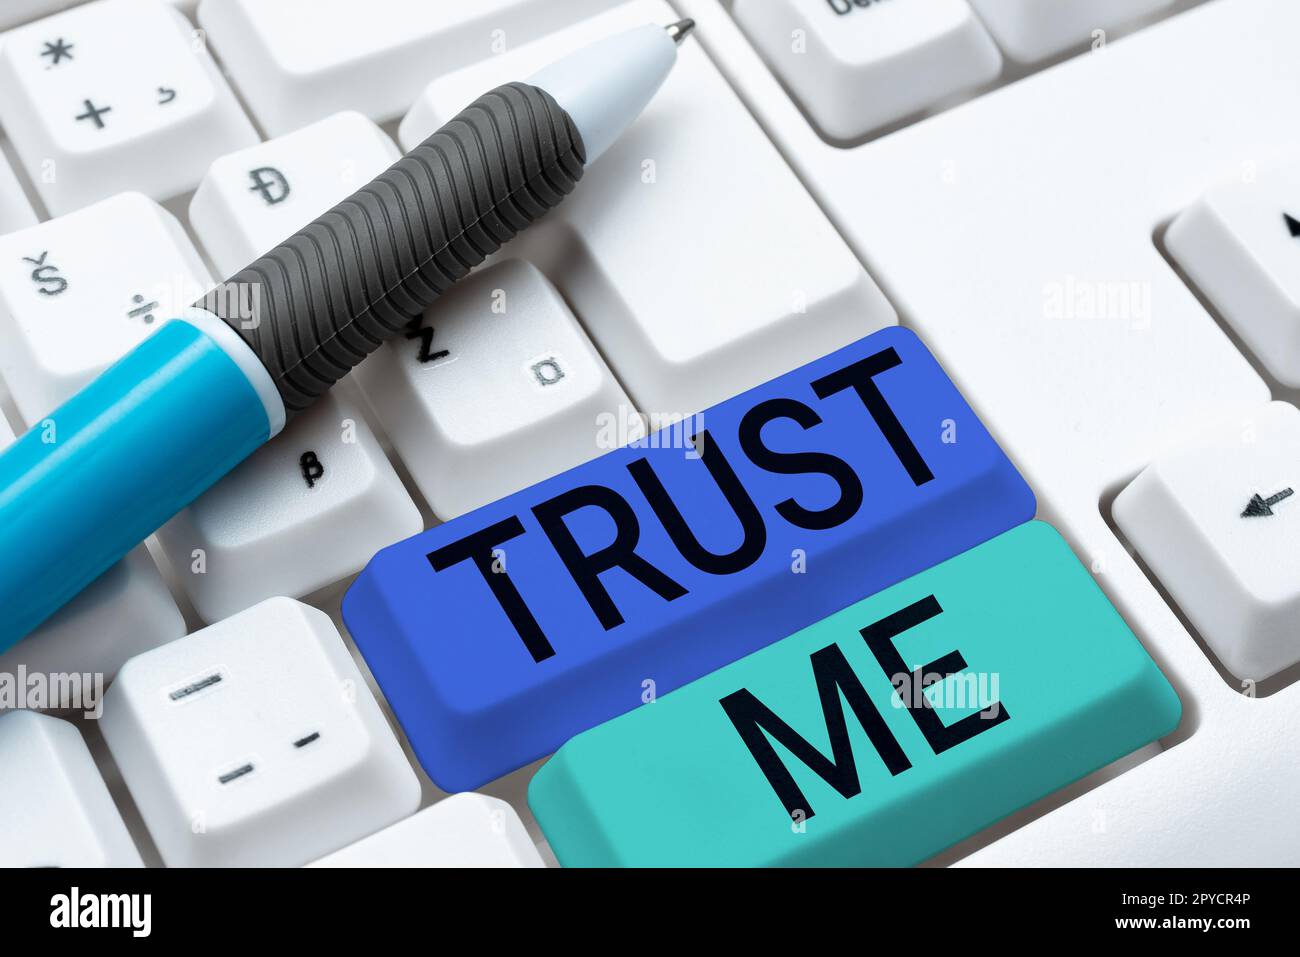 Unterschreiben Sie mit "mir vertrauen". Der Geschäftsüberblick glaubt, dass Sie Vertrauen in die Unterstützung anderer haben Stockfoto